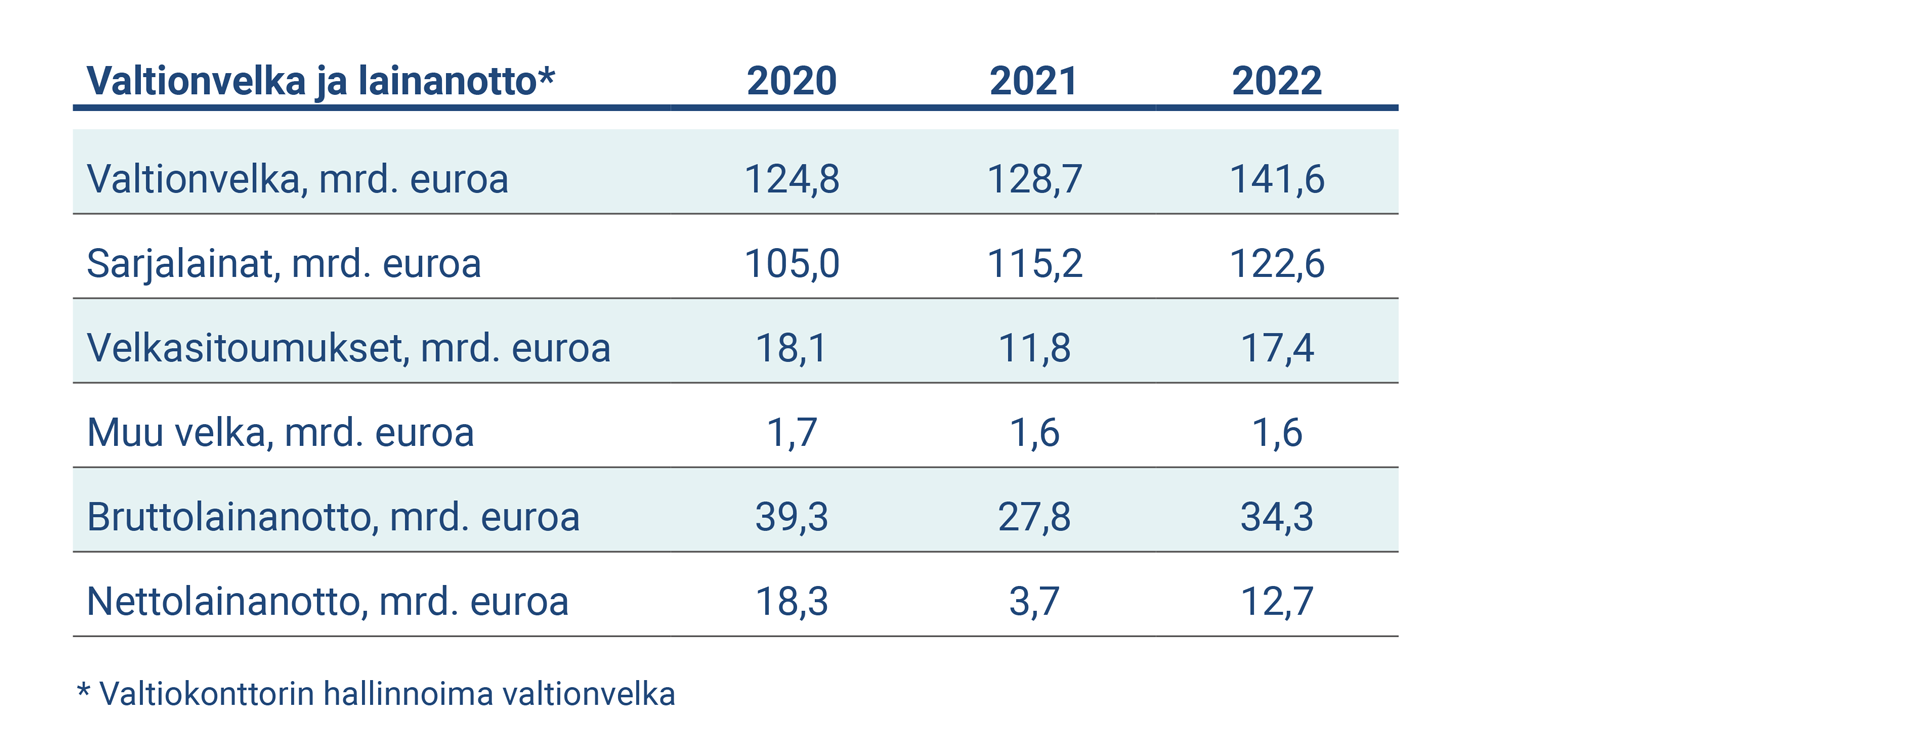 Taulukko kuvaa valtionvelan ja lainanoton keskeiset tunnusluvut 2020-2022.